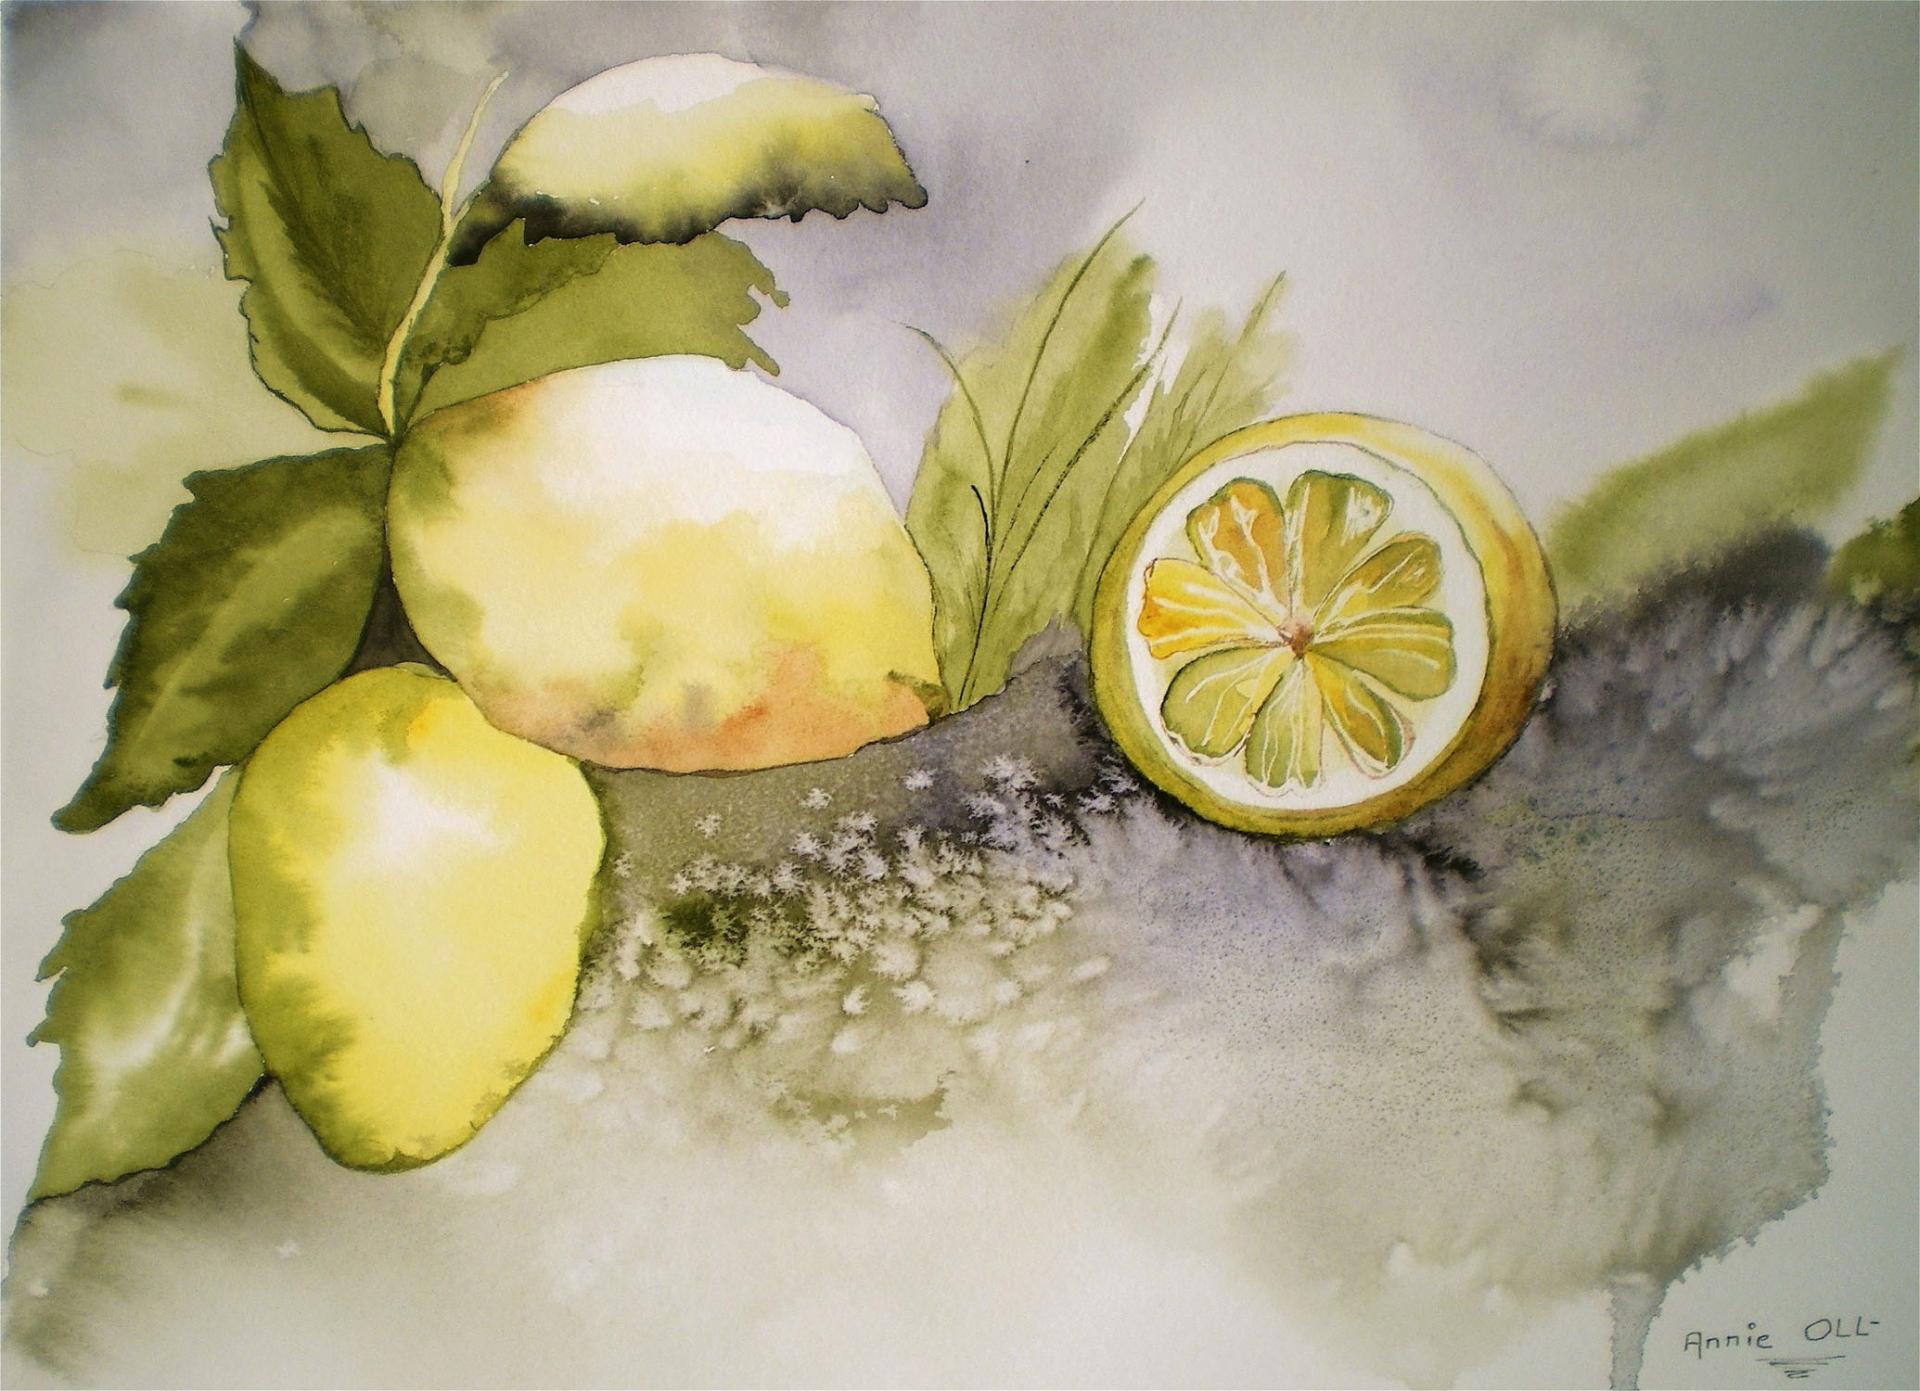 Les citrons